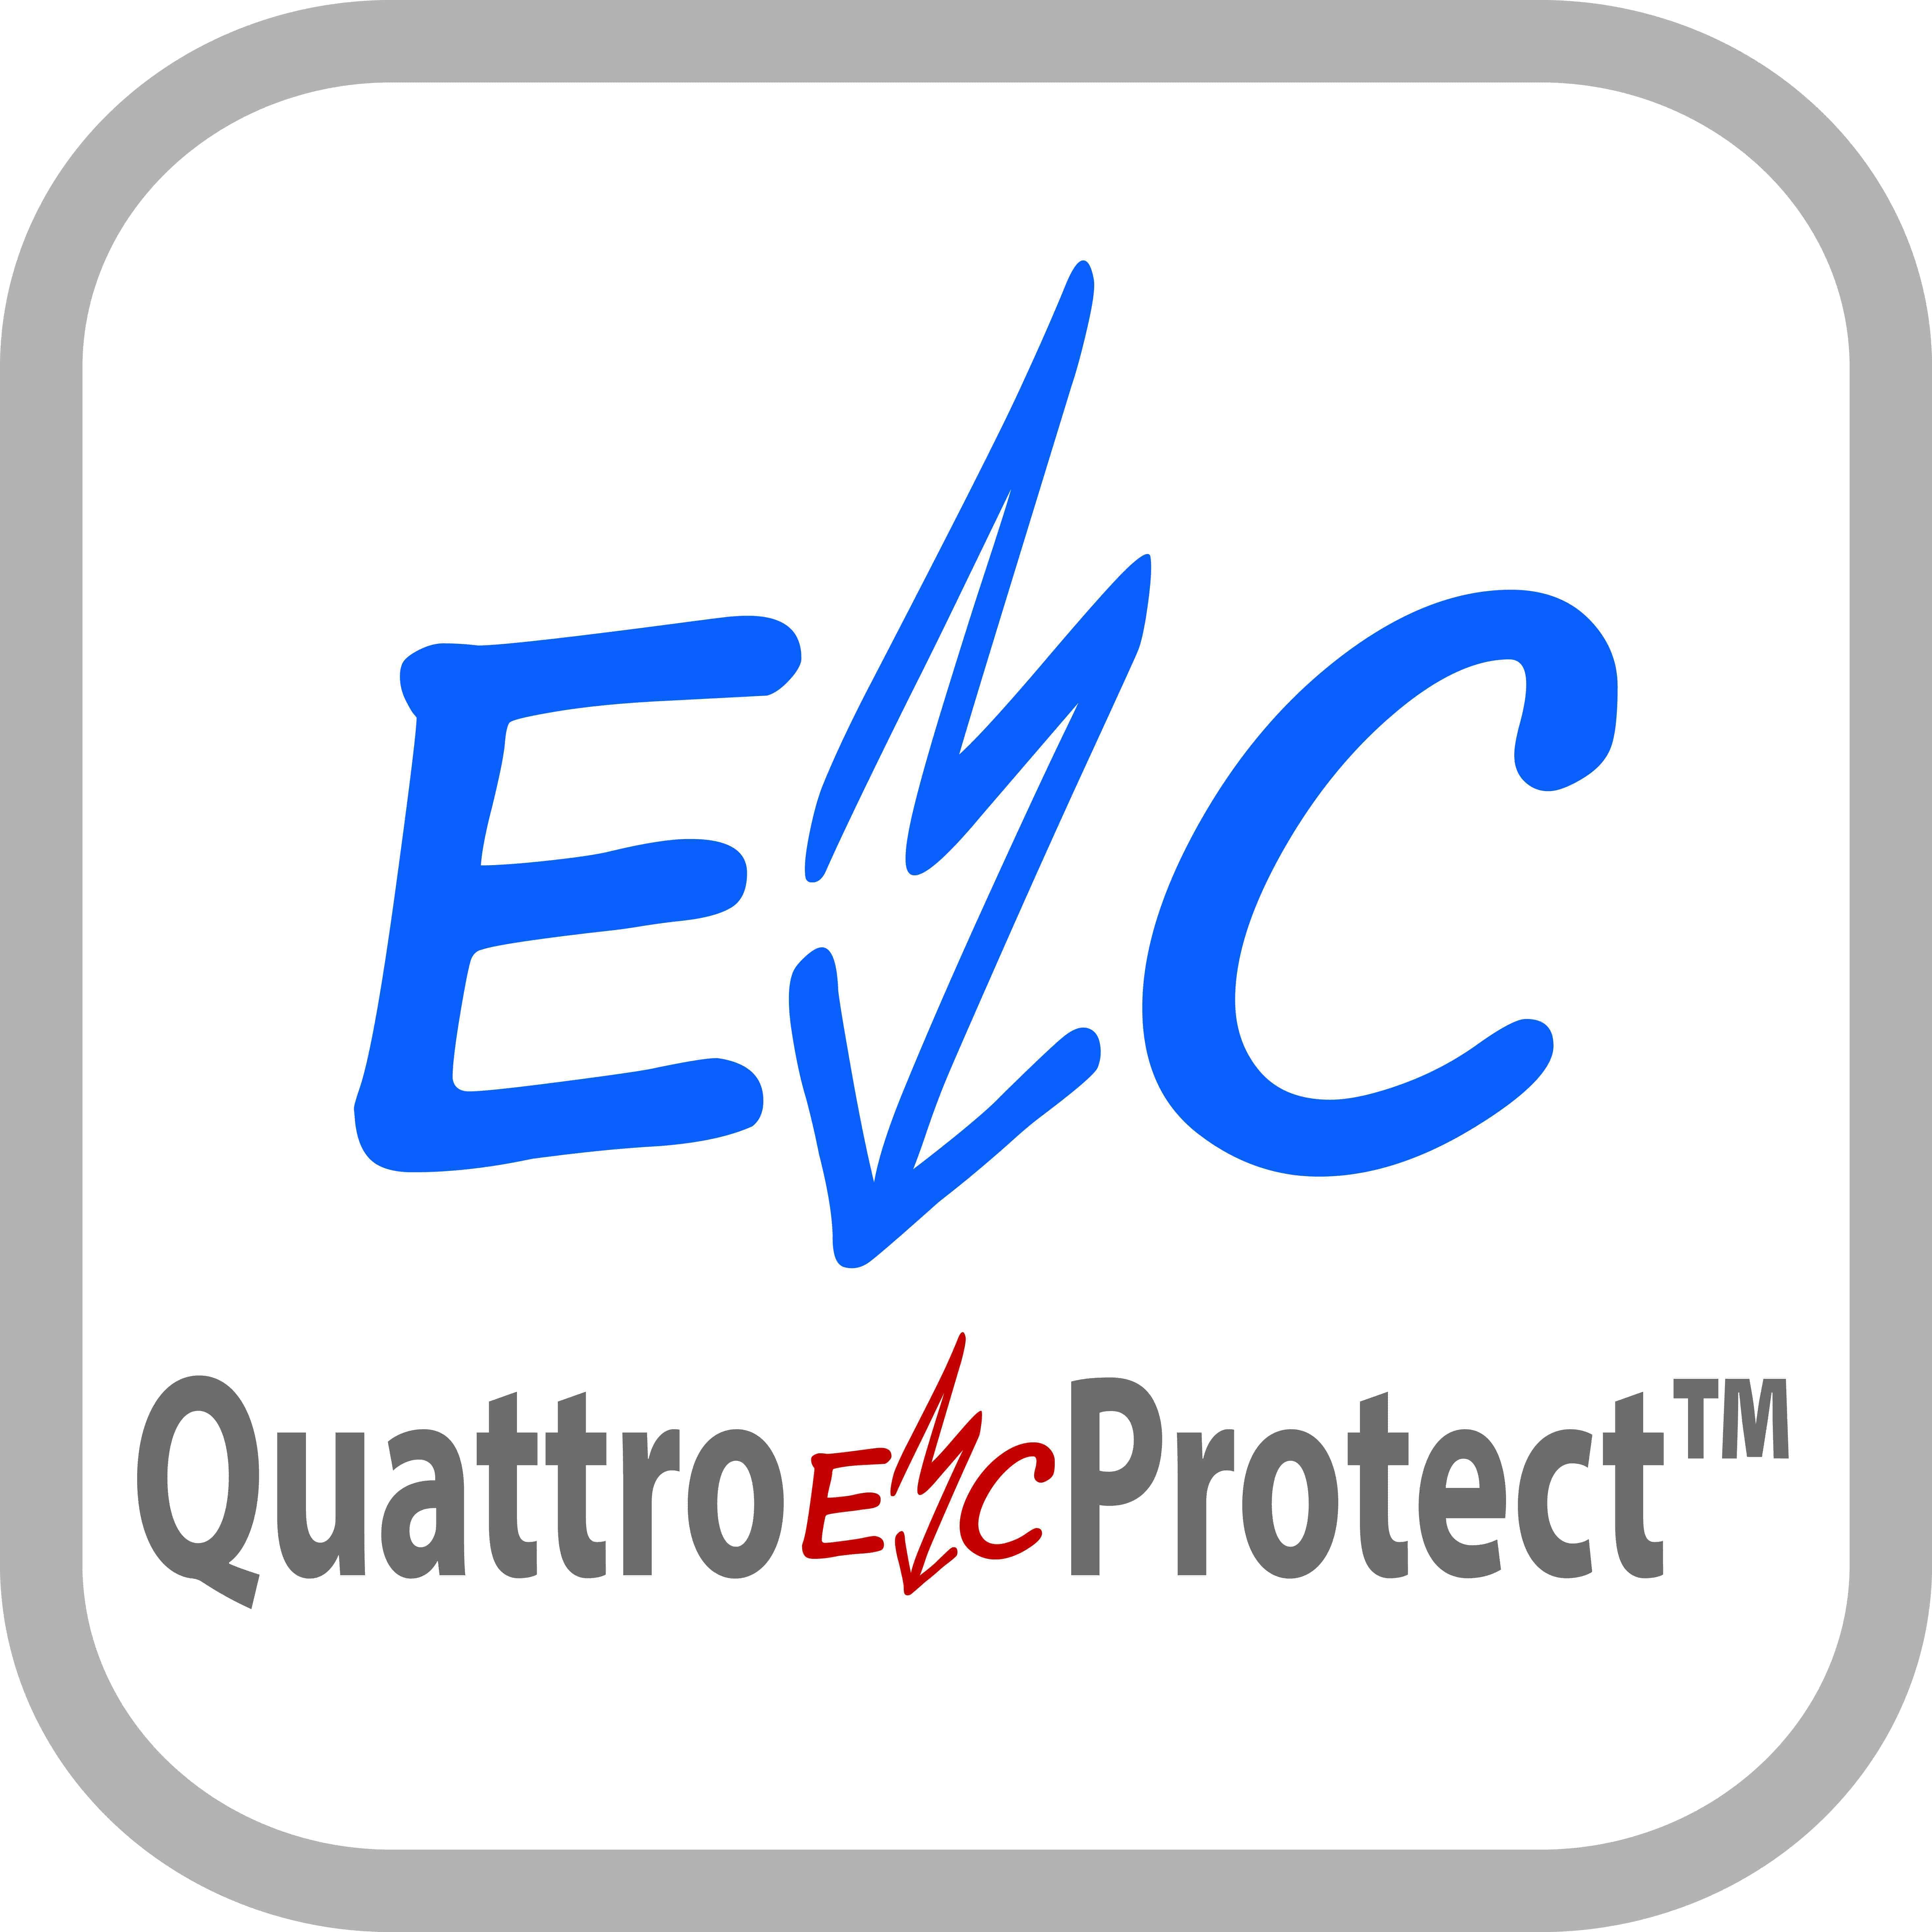 Quattro EMC Protect